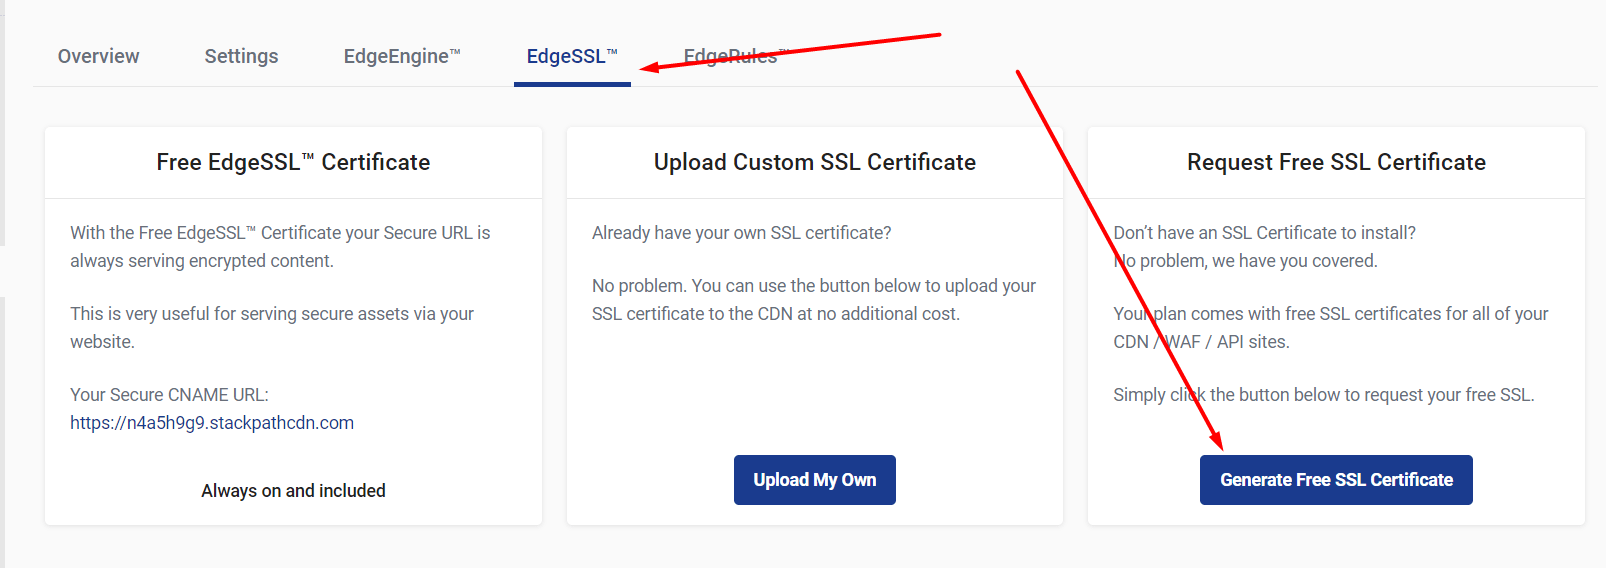 Generate Free SSL Certificate 